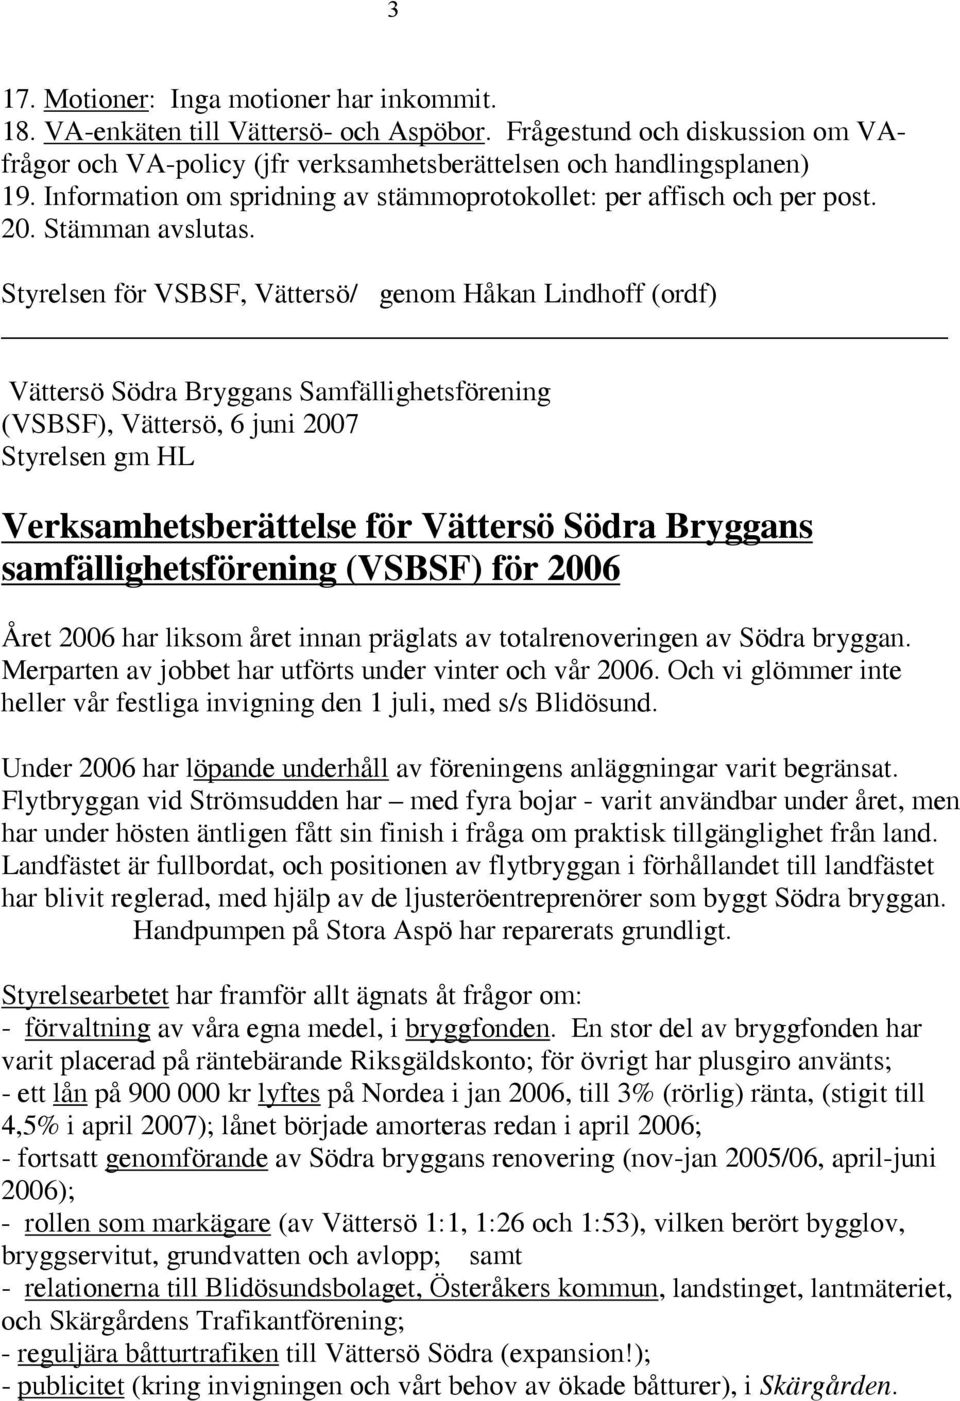 Styrelsen för VSBSF, Vättersö/ genom Håkan Lindhoff (ordf) Vättersö Södra Bryggans Samfällighetsförening (VSBSF), Vättersö, 6 juni 2007 Styrelsen gm HL Verksamhetsberättelse för Vättersö Södra